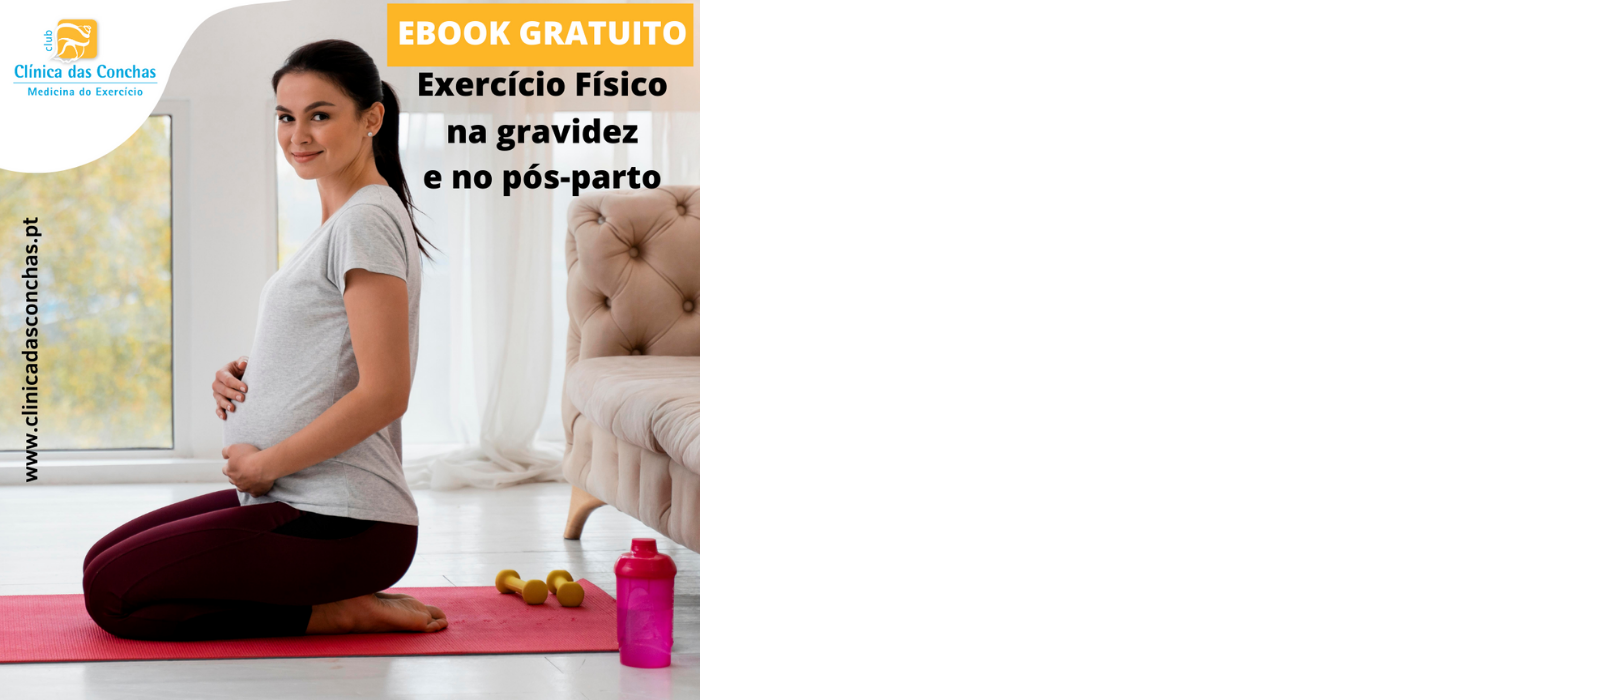 Ebook GRATUITO: Exercício Físico na Gravidez e Pós-parto - Clínica das  Conchas